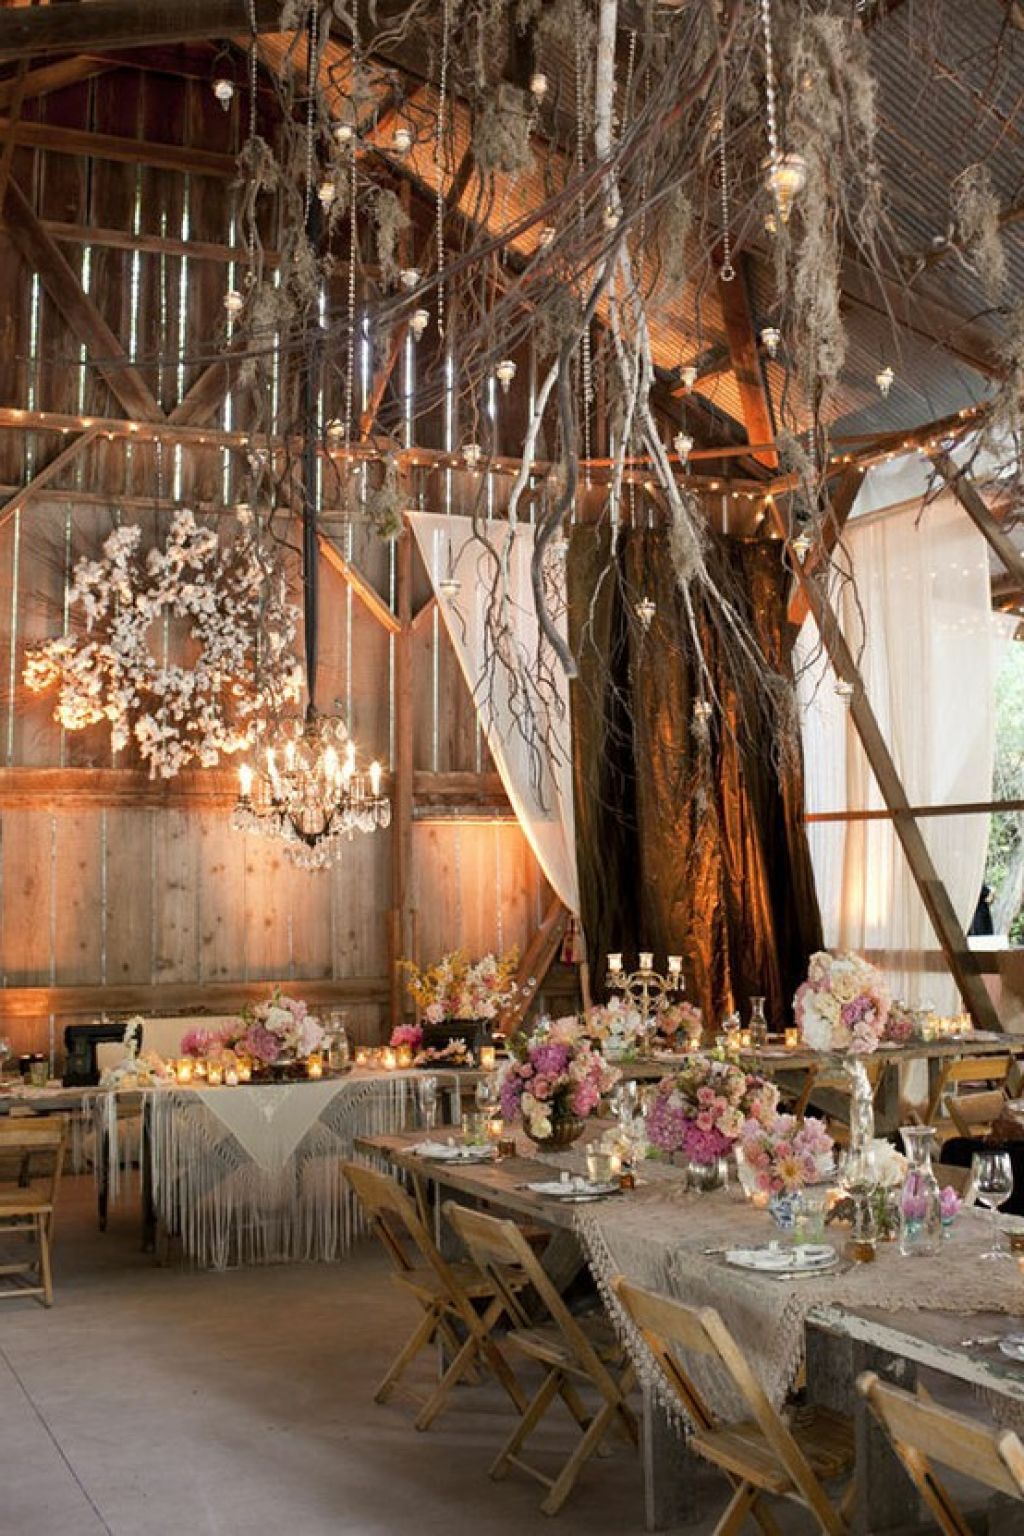 20 Farm Wedding Ideas Decorations and Favors - Wohh Wedding